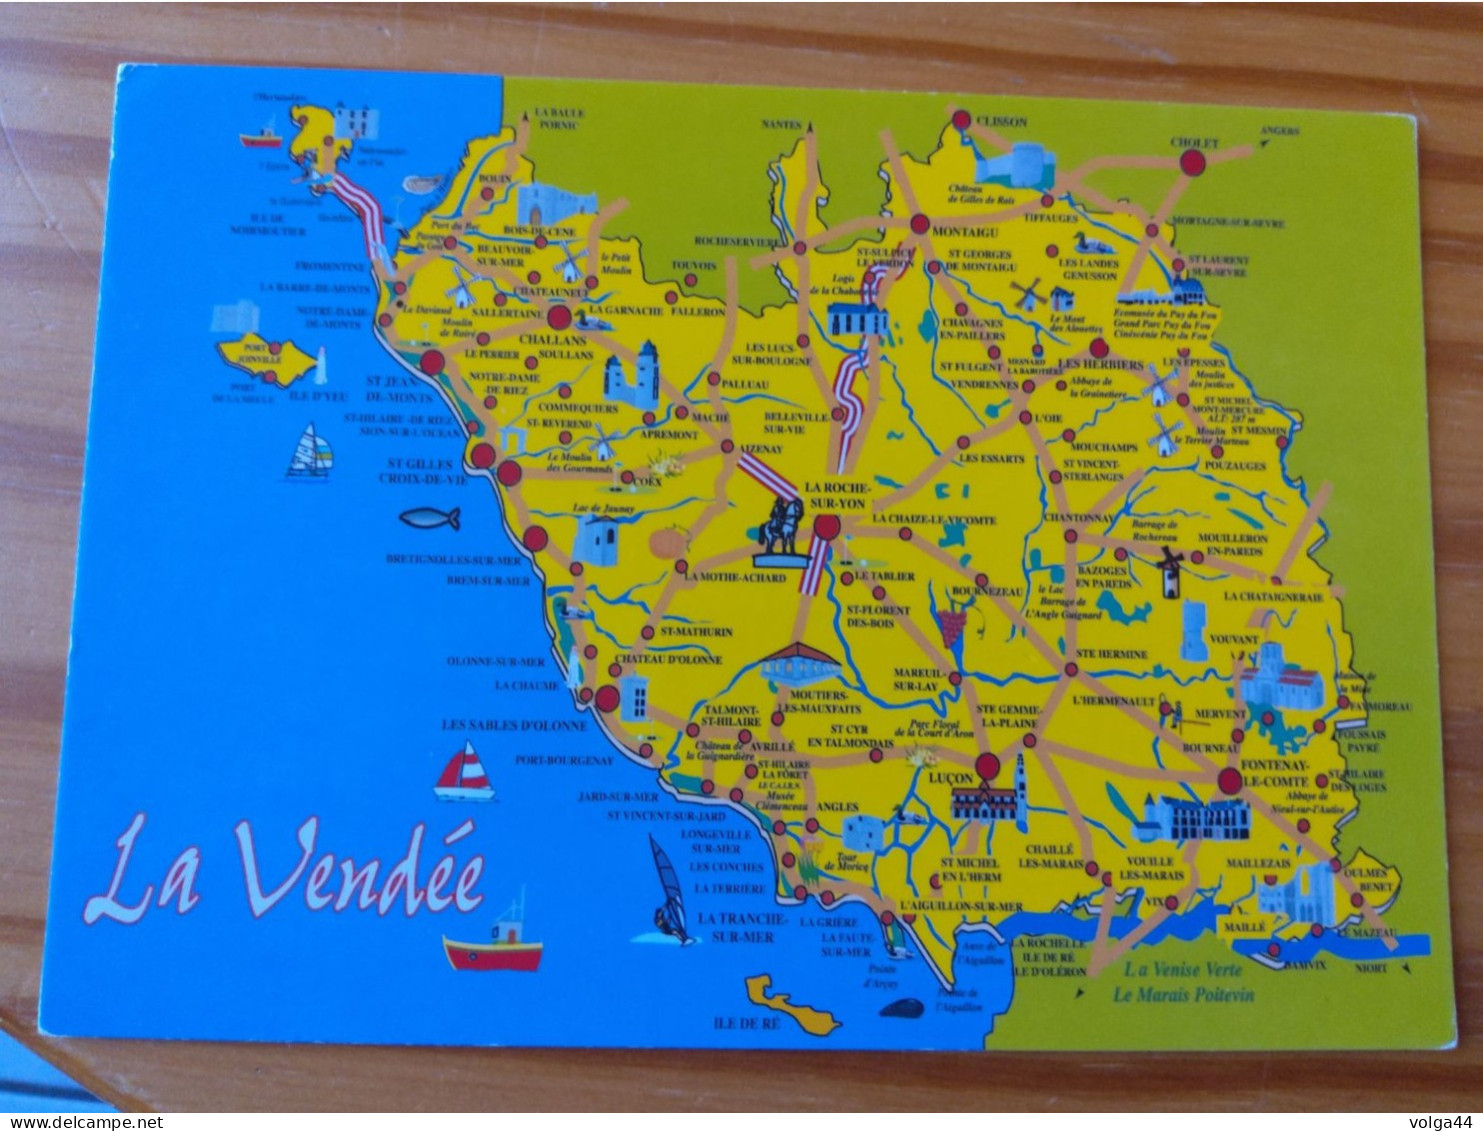 85 -LA VENDEE -  Carte Géographique- Contour Du Departement - Mapas